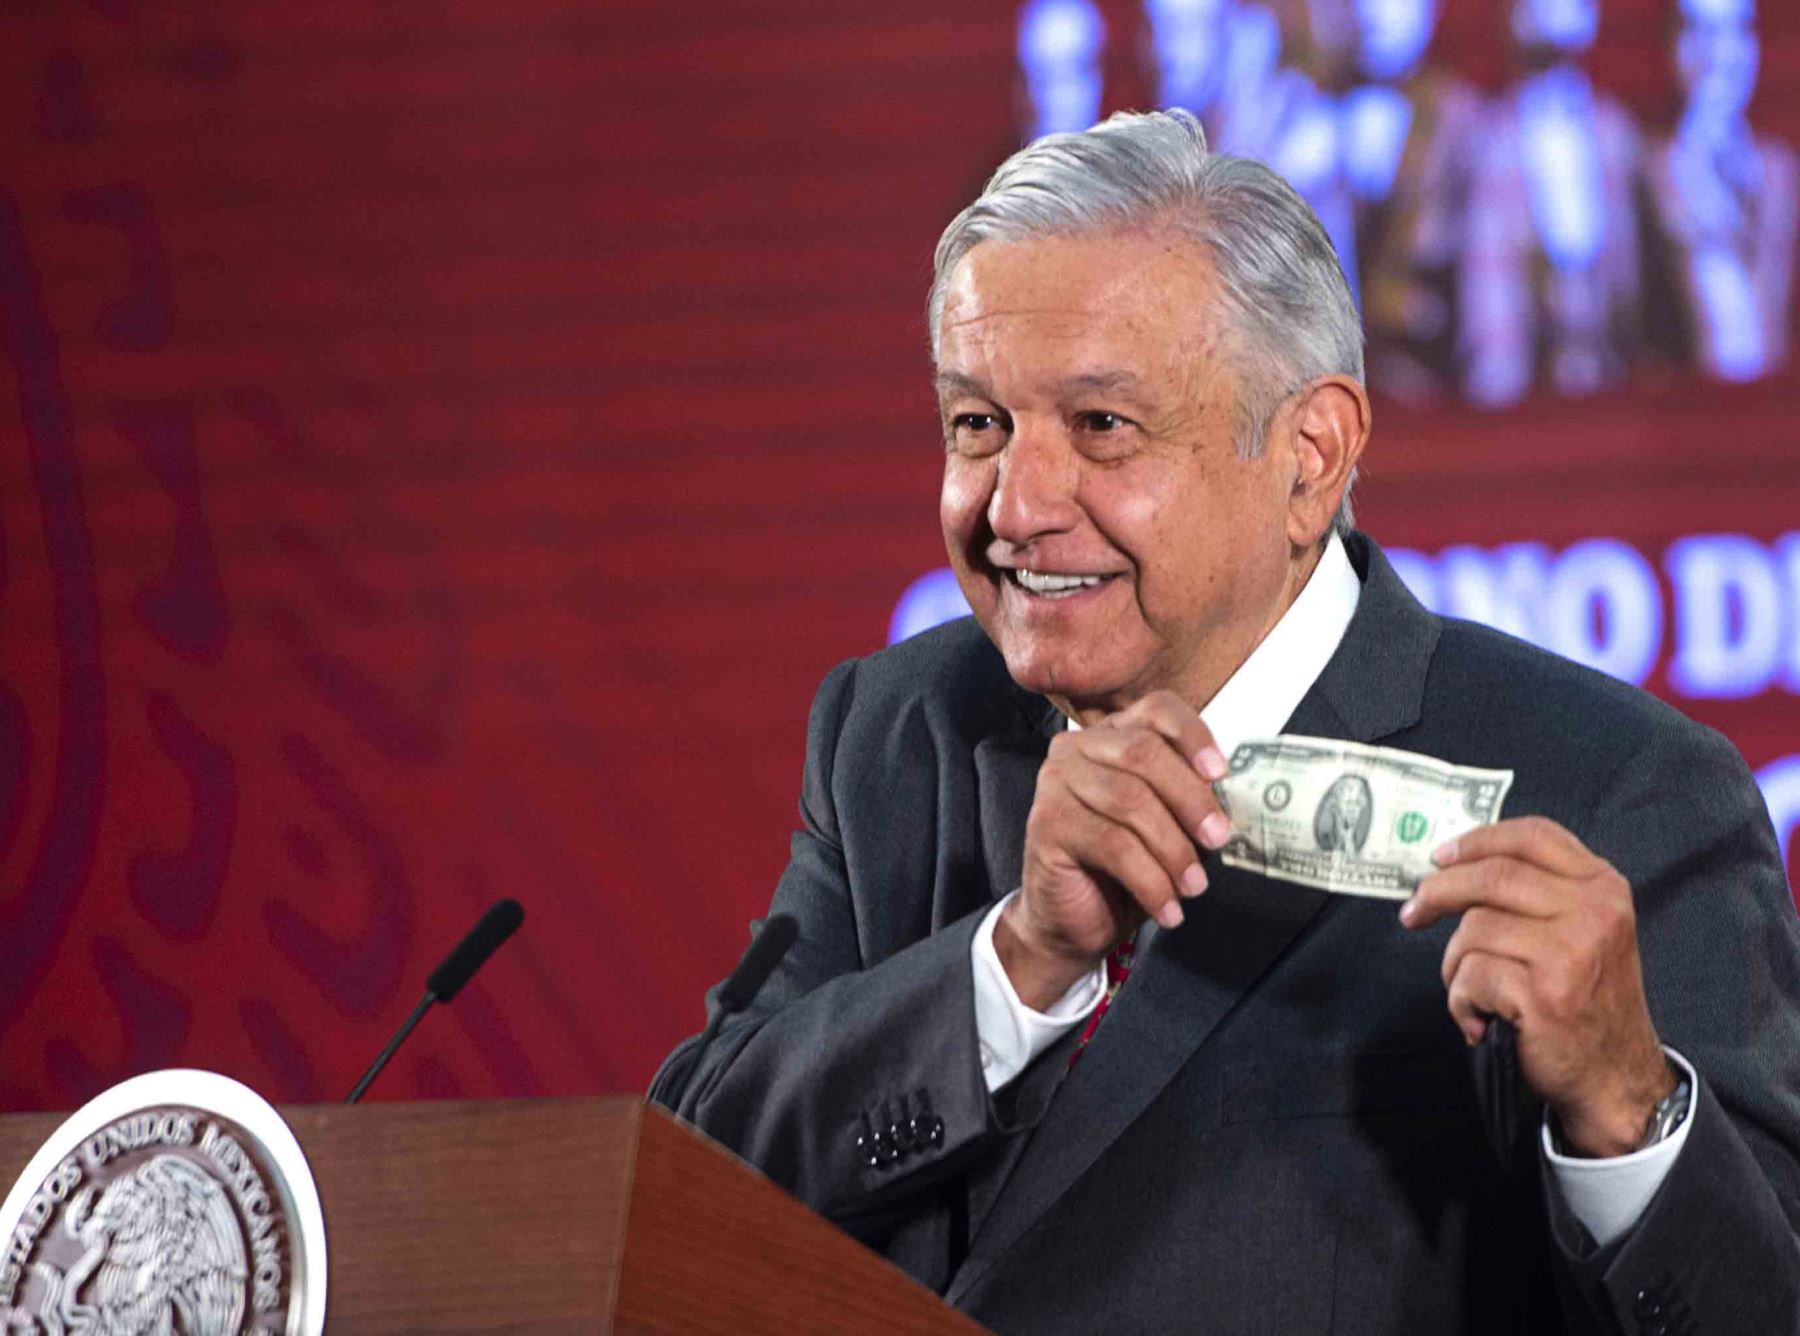 Imagen difundida por la Presidencia de México, muestra al presidente mexicano Andrés Manuel López Obrador mostrando un billete de dos dólares durante una conferencia de prensa en el Palacio Nacional en la Ciudad de México, el 18 de marzo de 2020. Foto: AFP